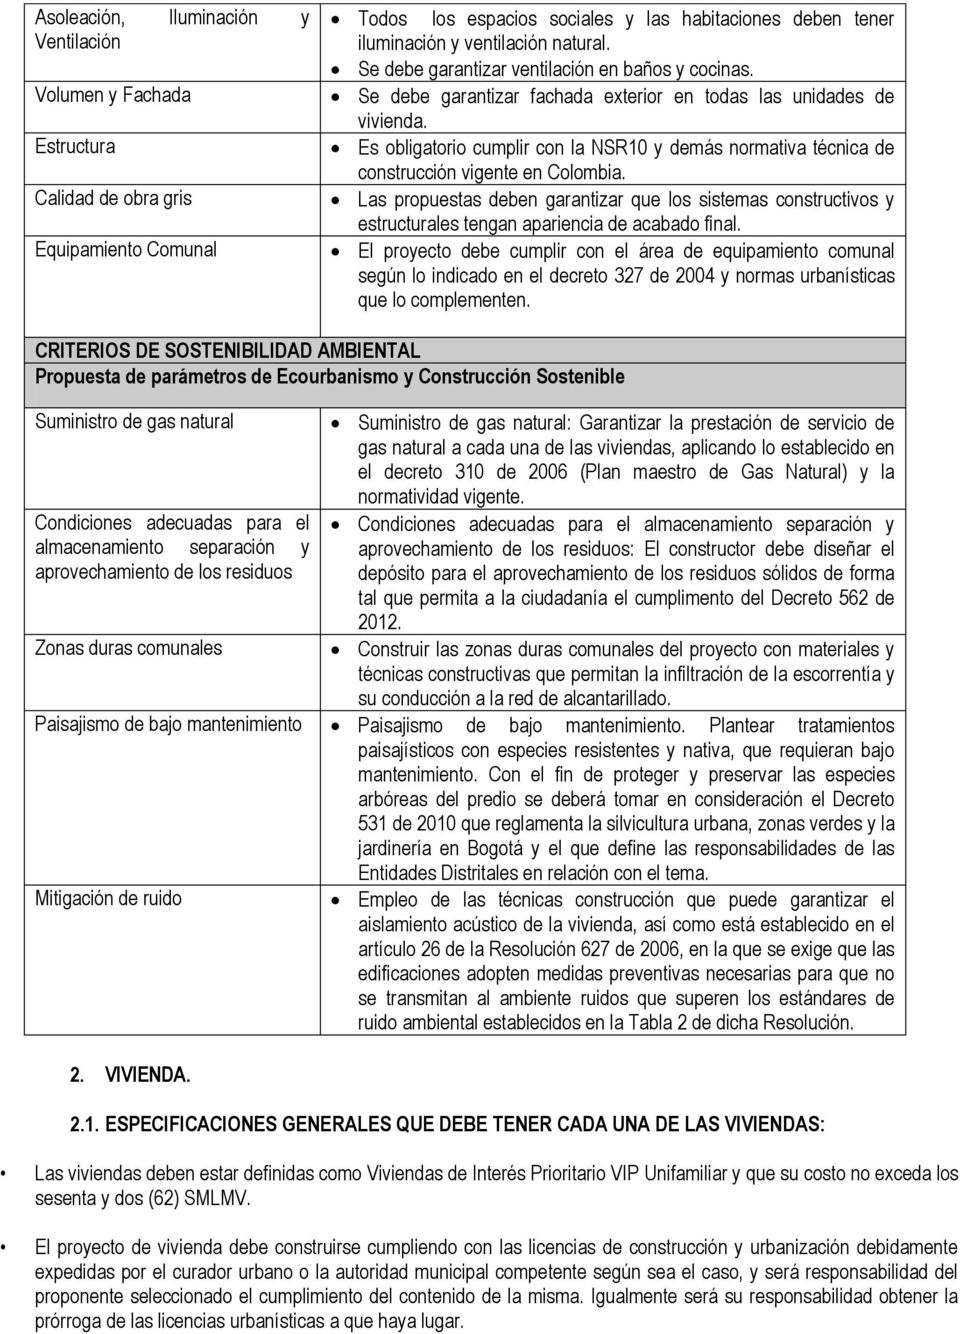 Es obligatorio cumplir con la NSR10 y demás normativa técnica de construcción vigente en Colombia.